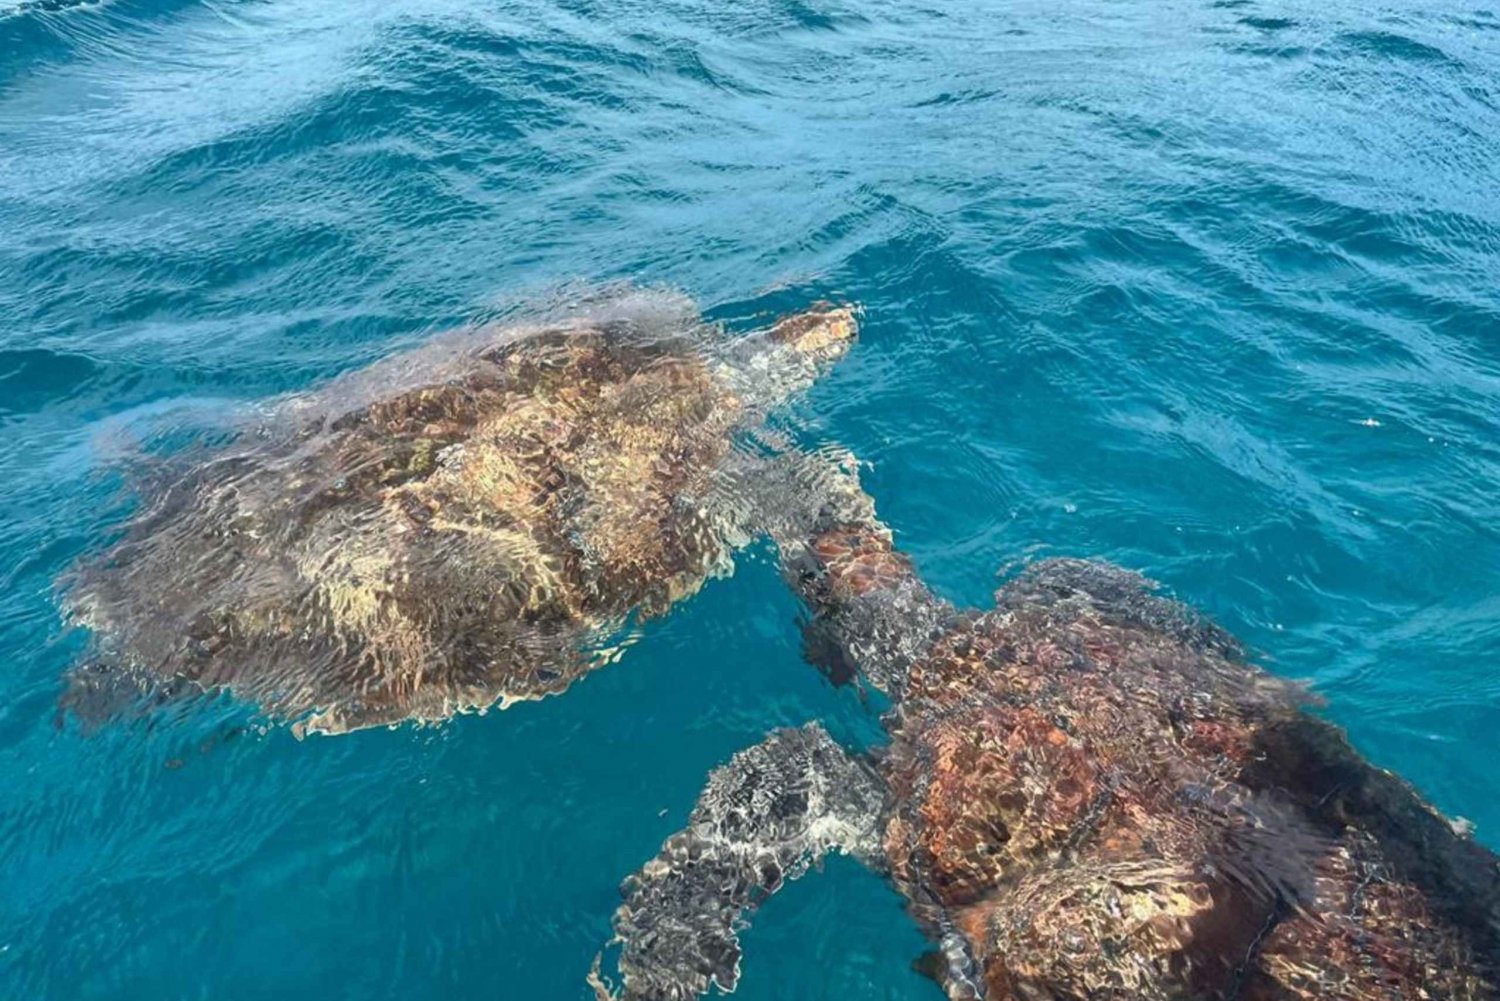 São Vicente: Snorkel with Sea Turtles Adventure